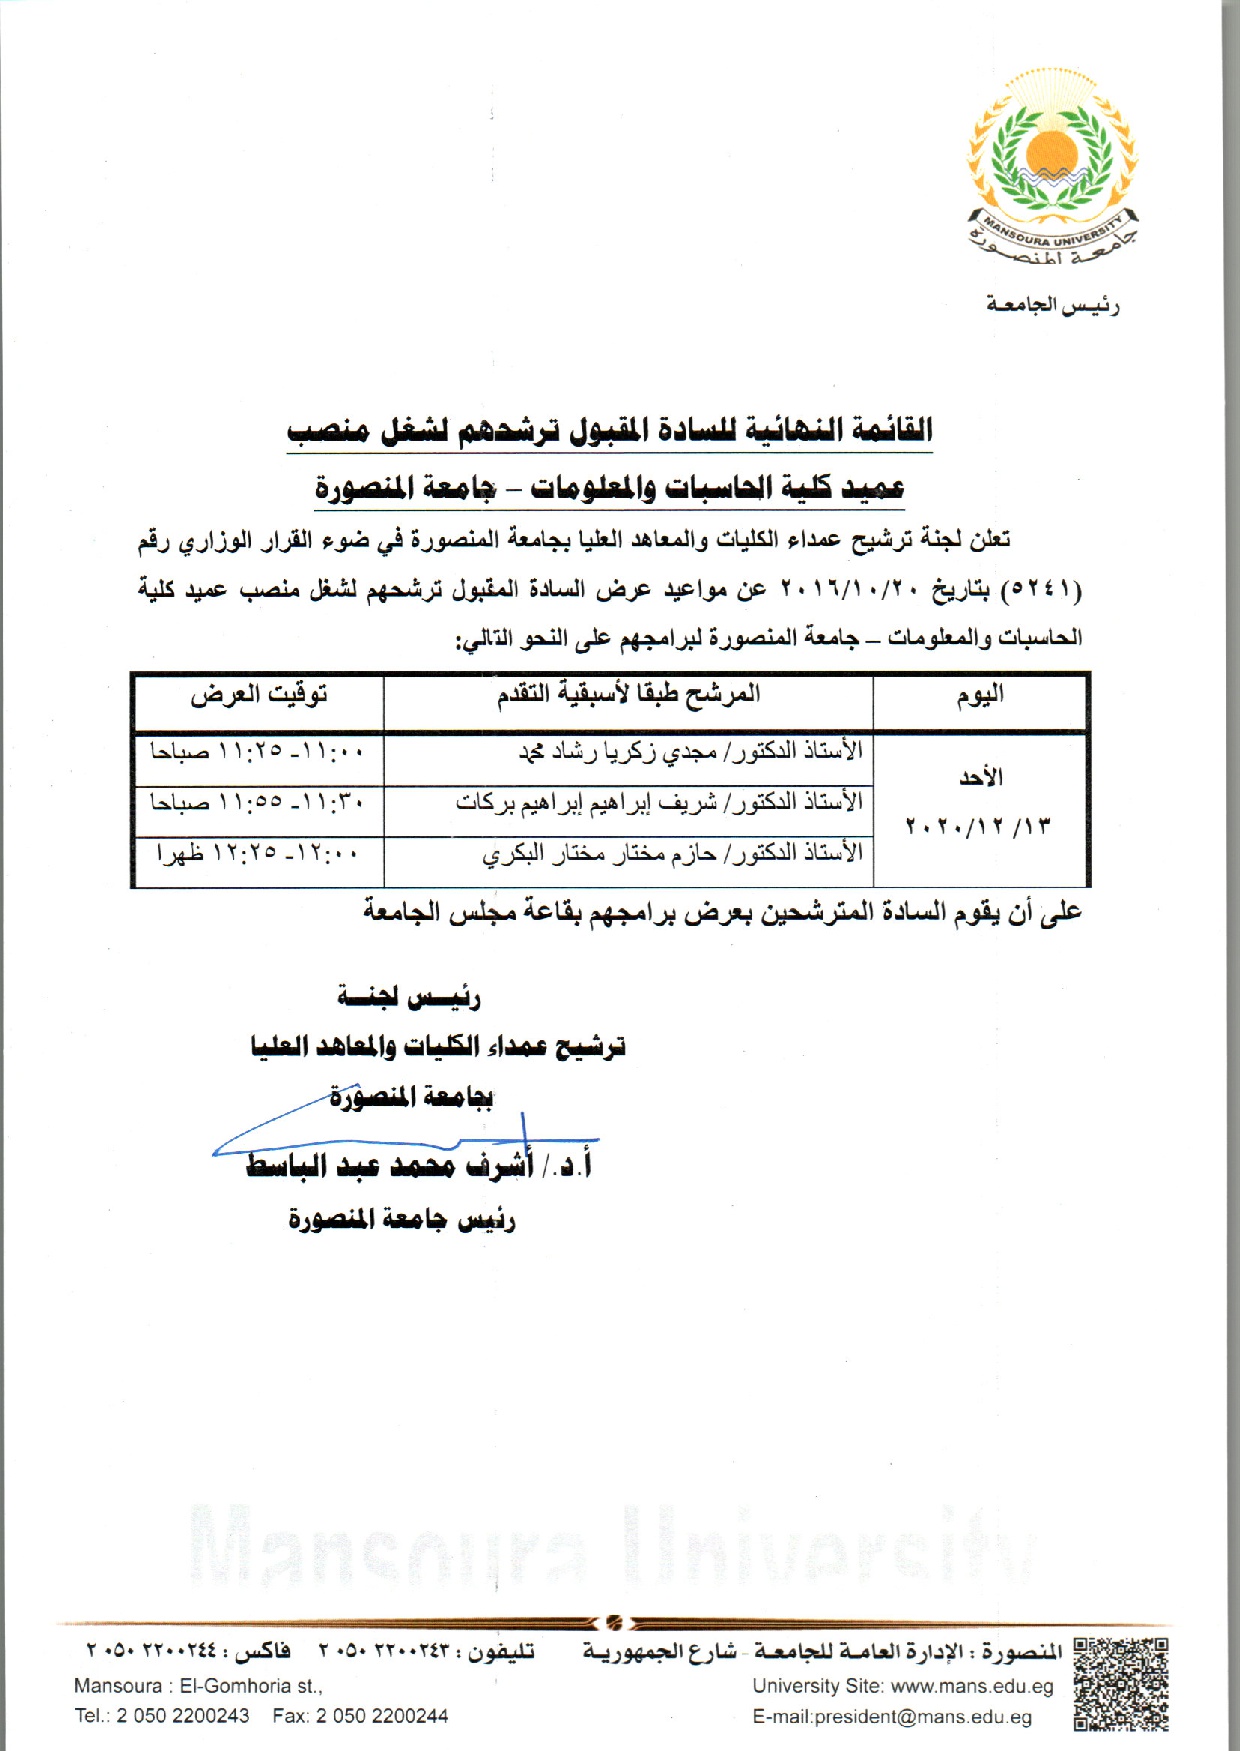 القائمة النهائية للسادة المقبول ترشحهم لشغل منصب عميد كلية الحاسبات والمعلومات - جامعة المنصورة